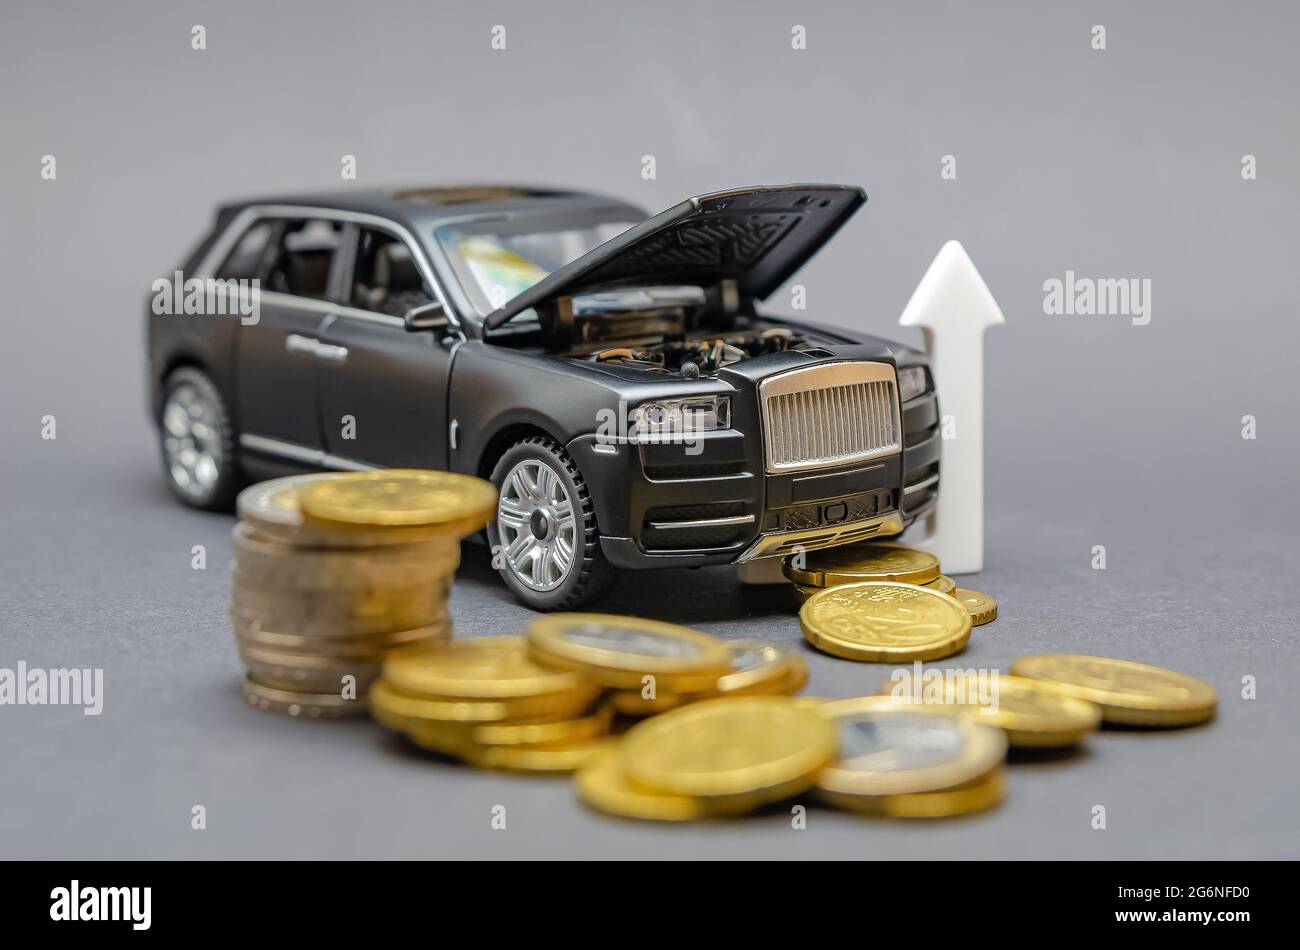 Steigende Preise für Autoteile. Auf einem schwarzen Hintergrund befindet sich ein Modellauto mit einer erhöhten Haube, um eine Münze herum. Car Service Preissteigerung Konzept. Stockfoto